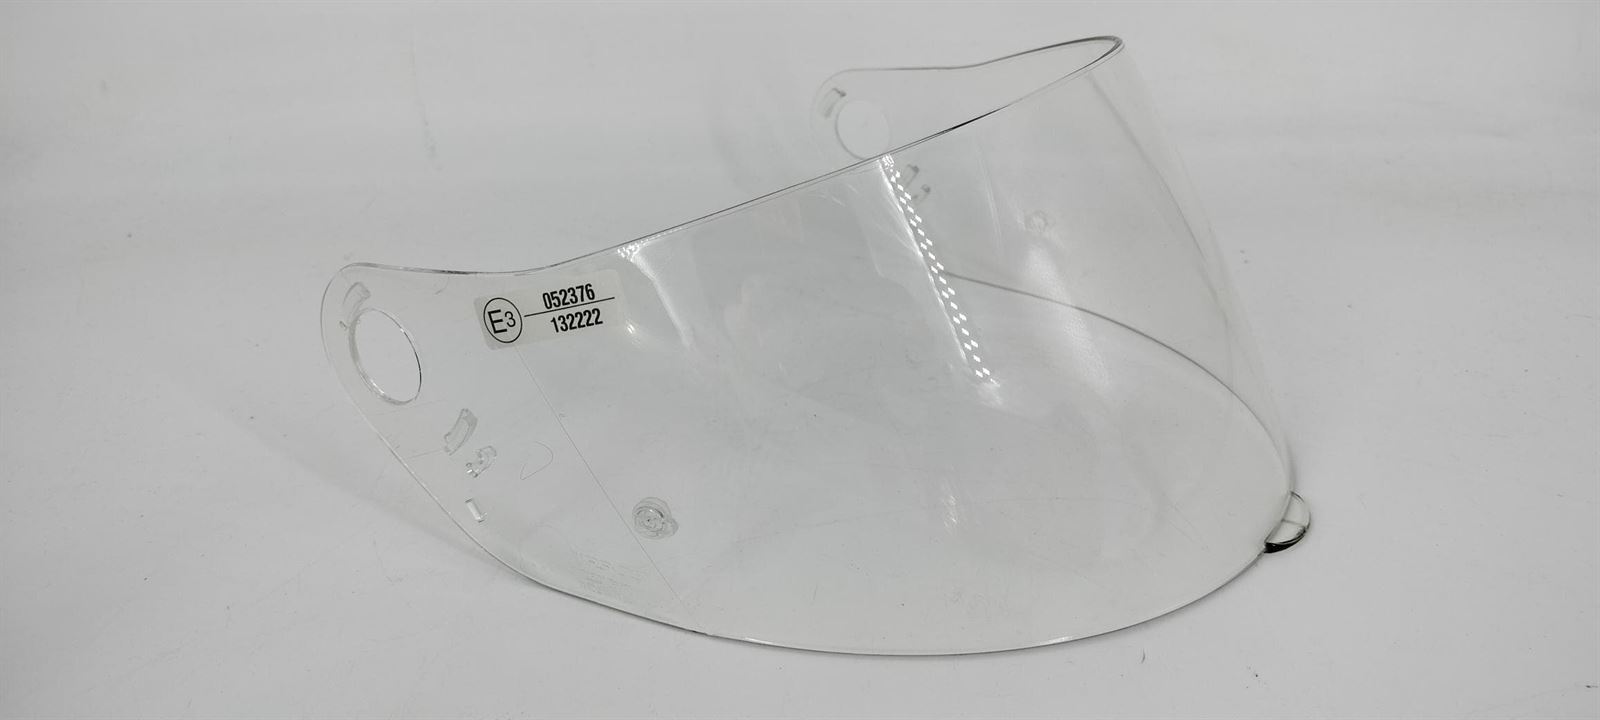 Pantalla casco integral Nolan N62 transparente - Imagen 1